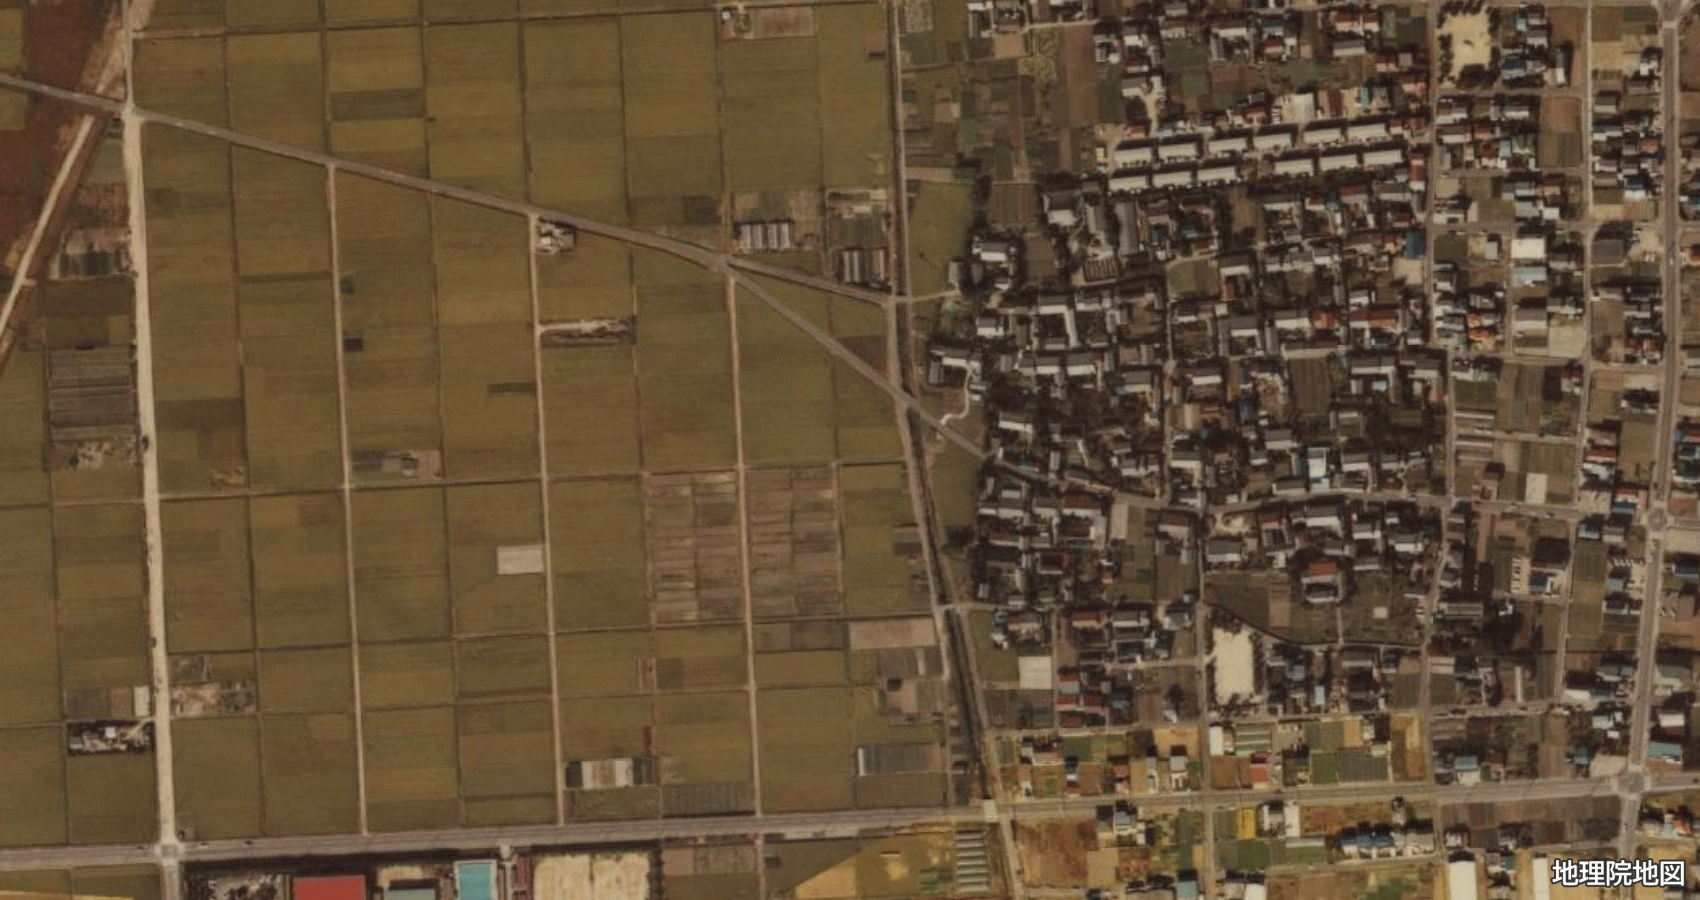 清須市上条 衛星地図 1979〜1983